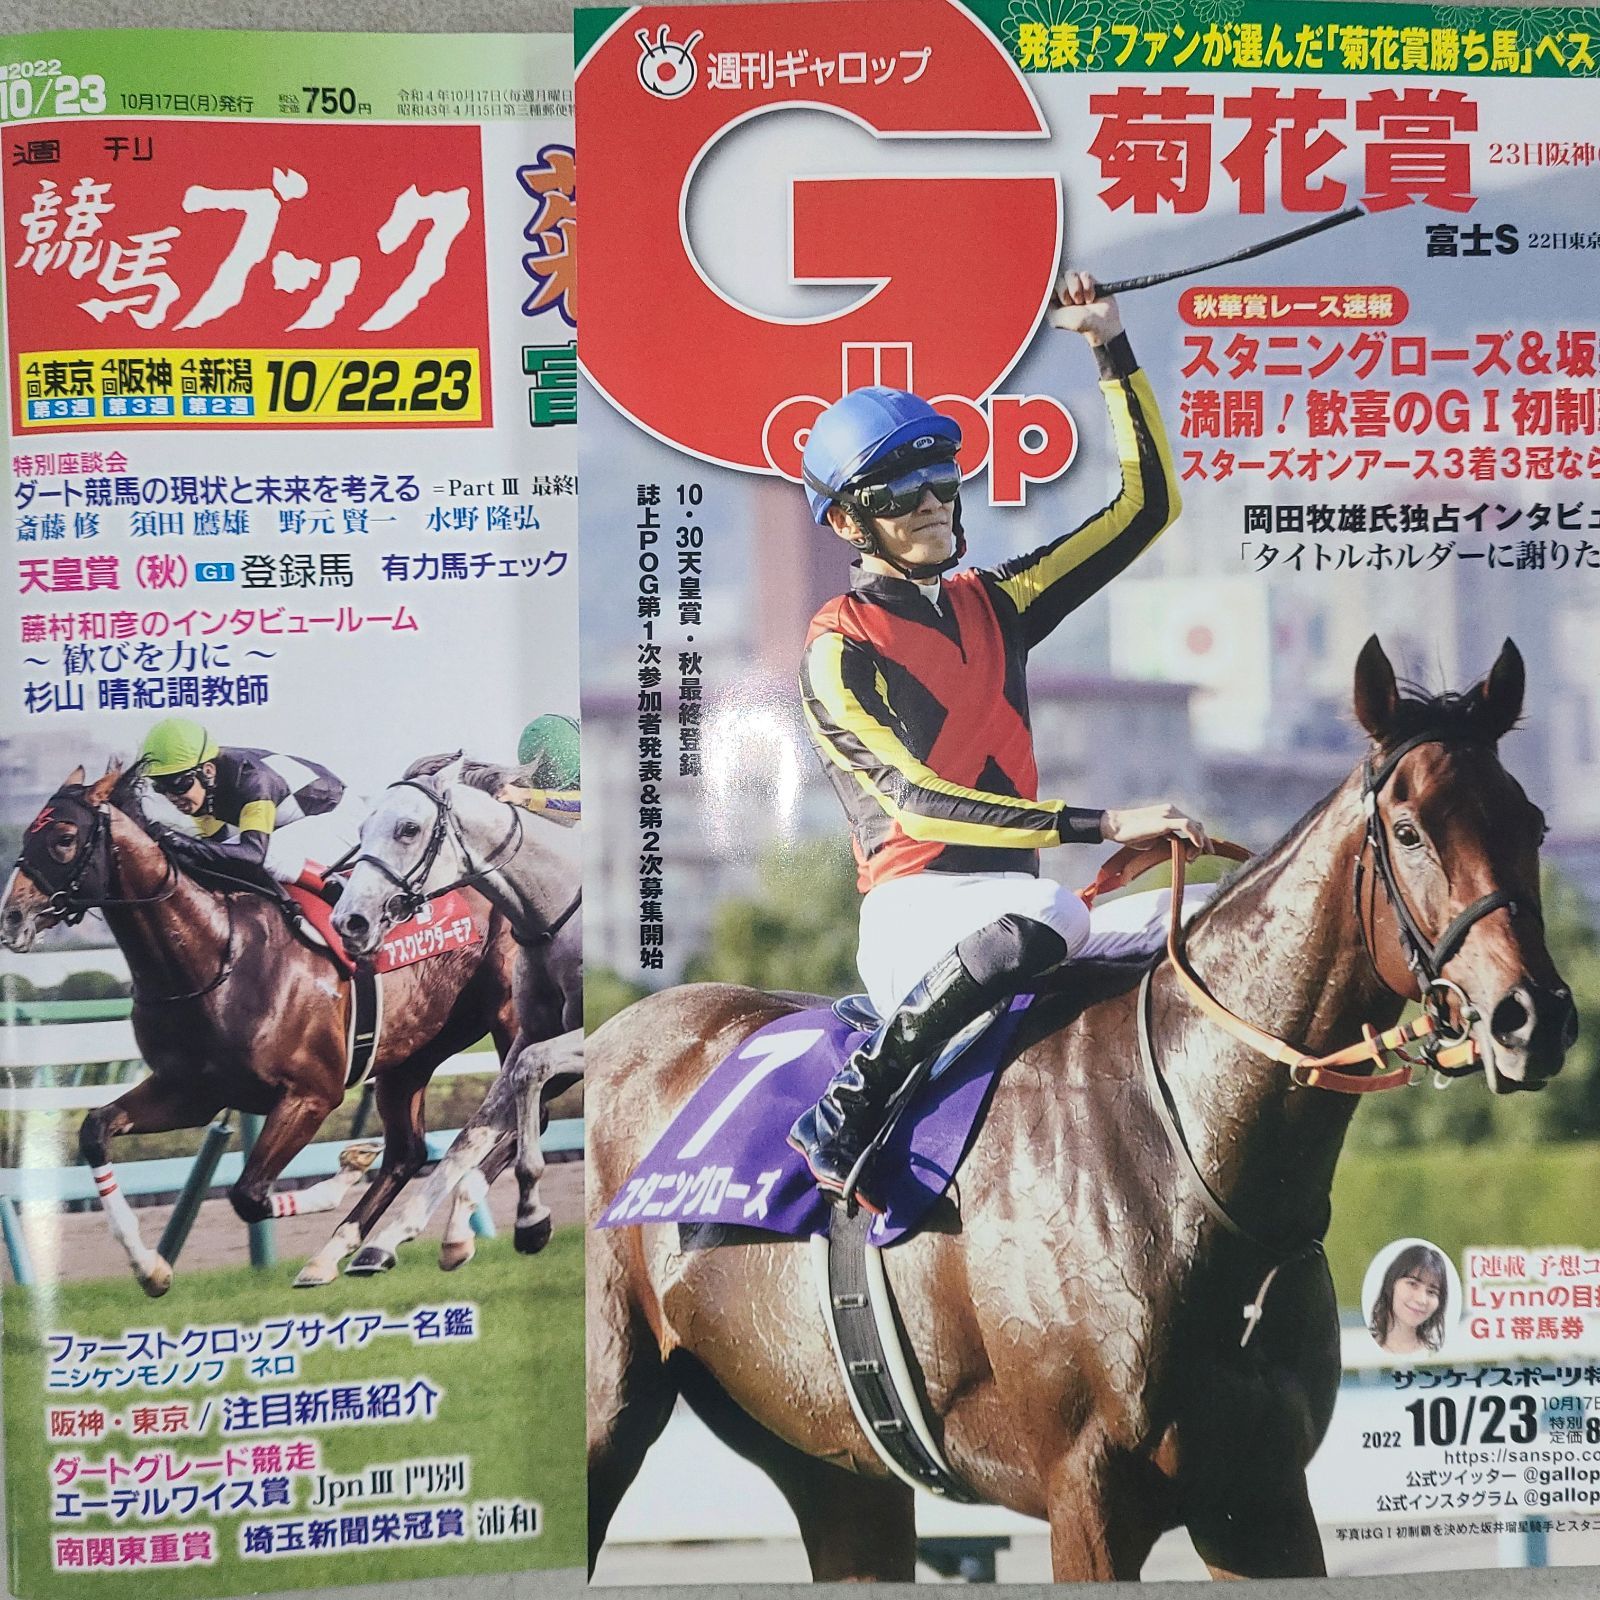 産経スポーツ 週刊誌 Gallop/ギャロップ 2000年12月17日 競馬-